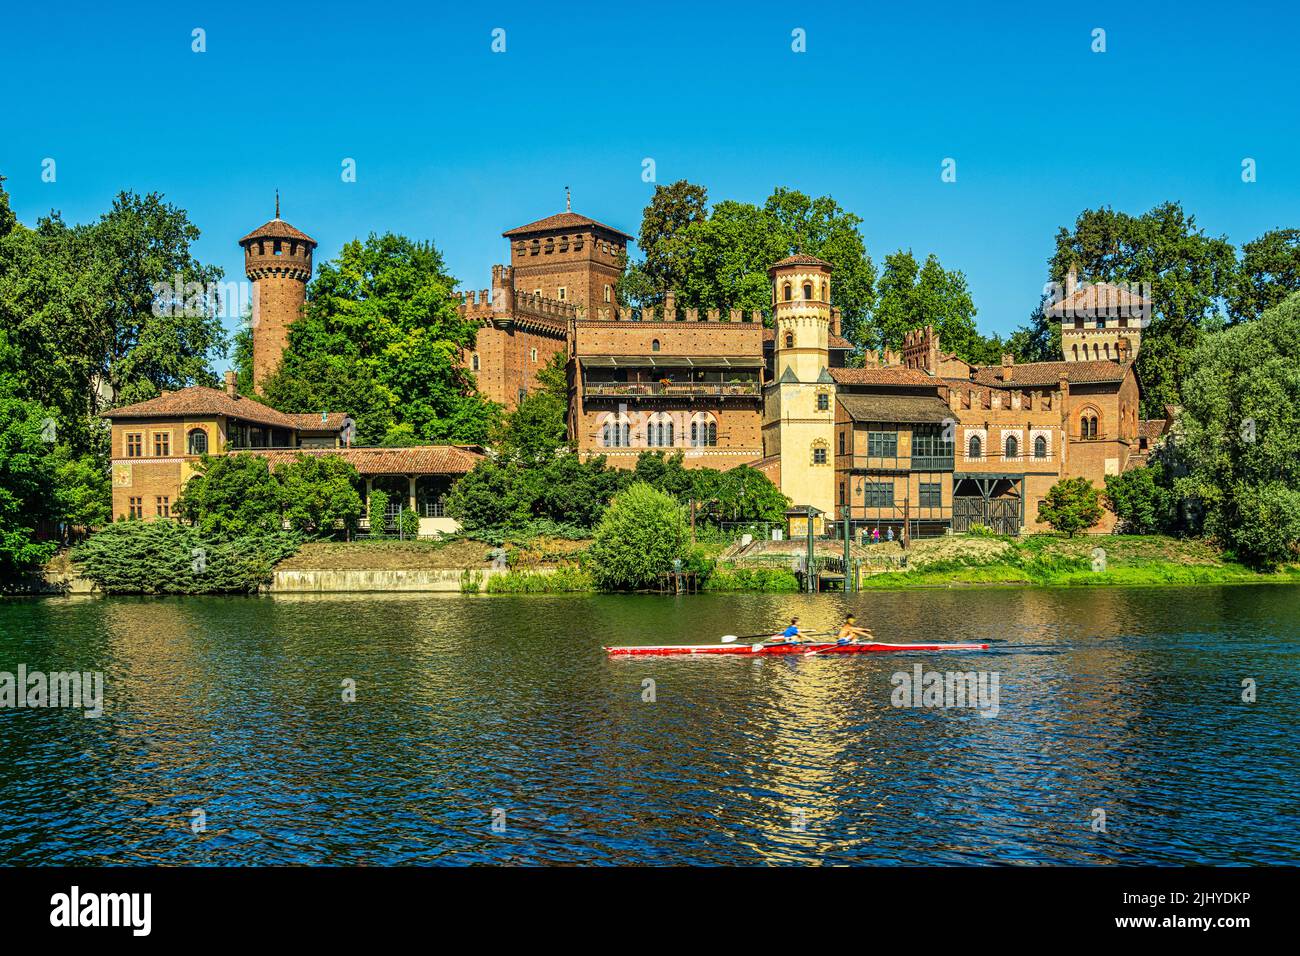 Parco del Valentino, ein mittelalterliches Dorf am Ufer des Flusses Po, das anlässlich der italienischen Generalausstellung von 1884 in Turin erbaut wurde.Piemont Stockfoto